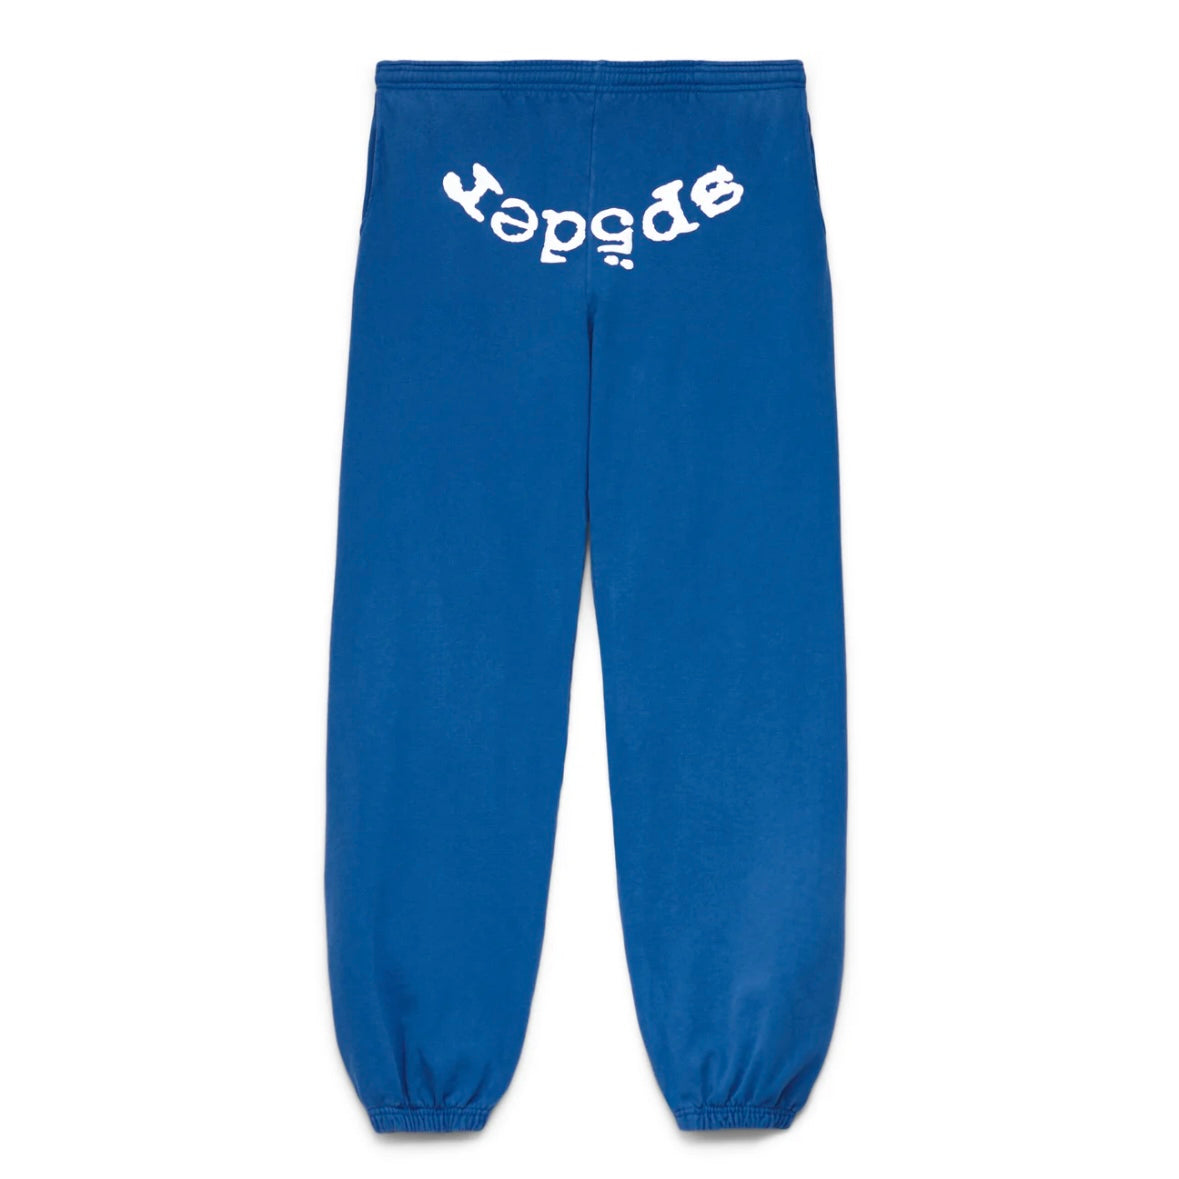 Sp5der Blue White Legacy Sweatpants Front